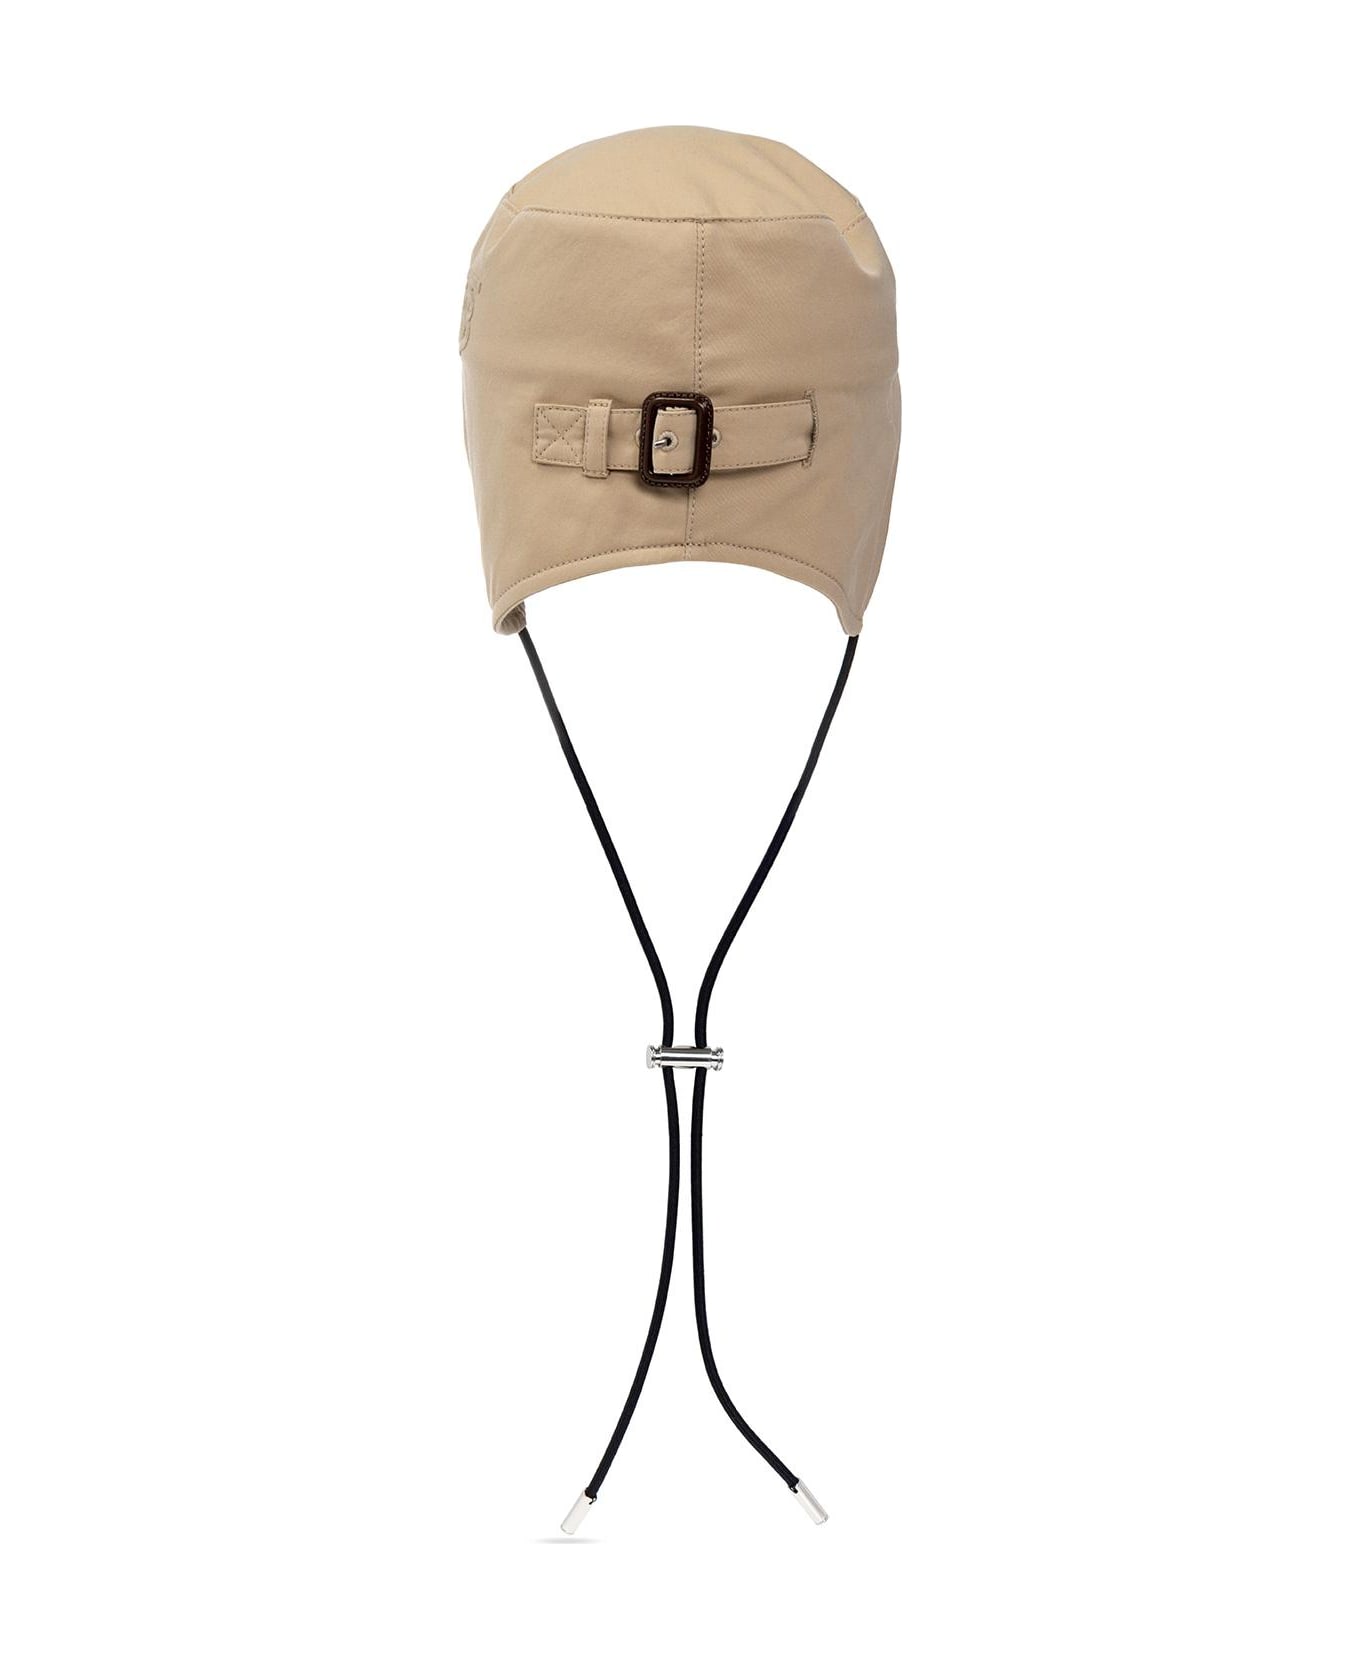 Burberry Baseball Cap - NEUTRALS 帽子